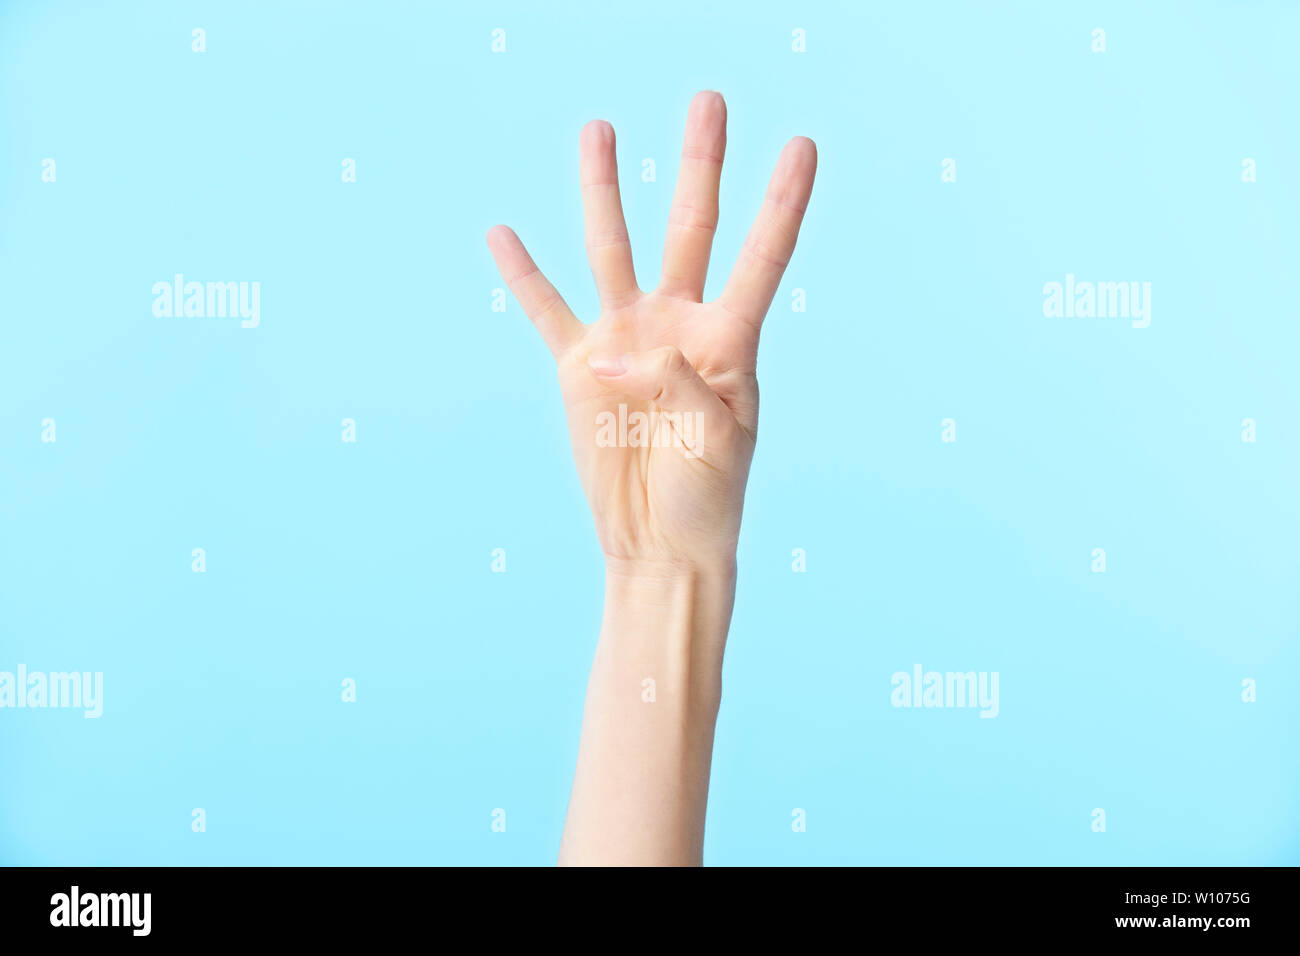 La mano humana mostrando número cuatro, aislado sobre fondo azul. Foto de stock